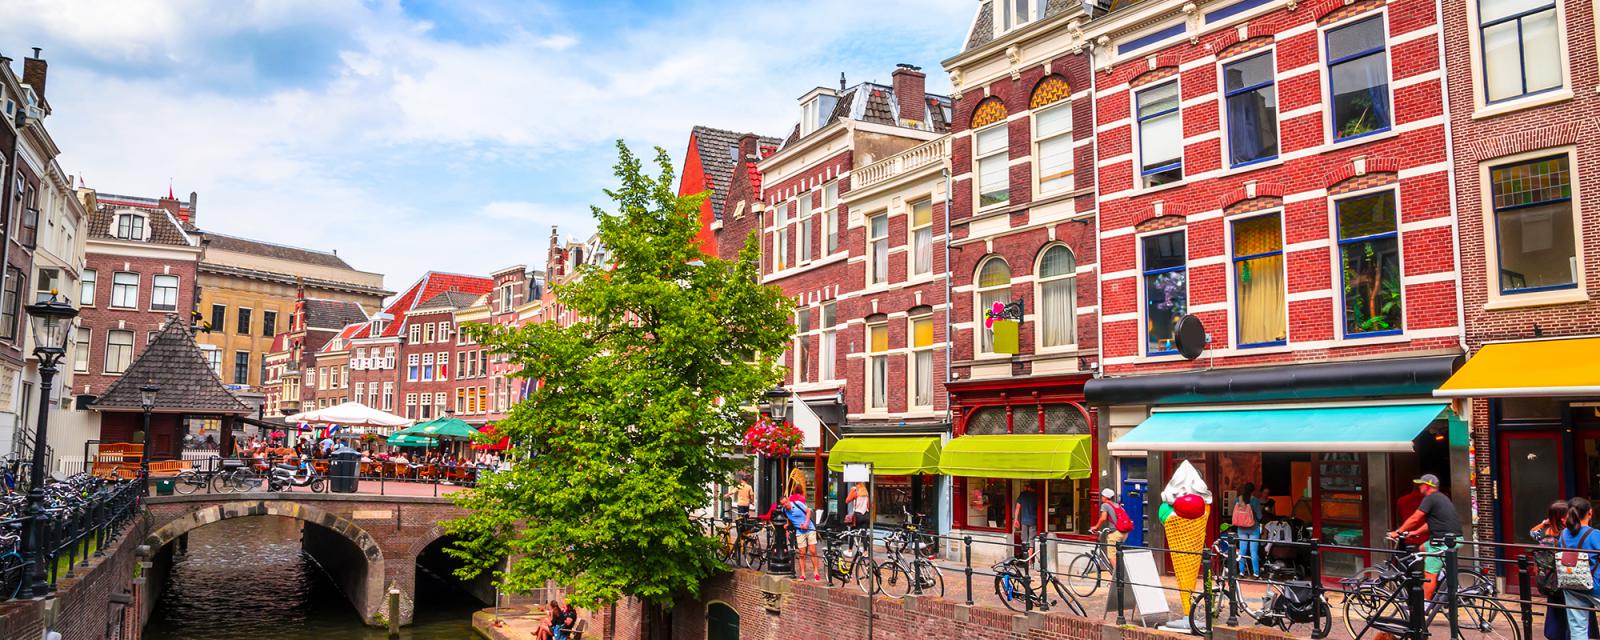 Dit zijn de mooiste plekken voor een stedentrip naar Utrecht 